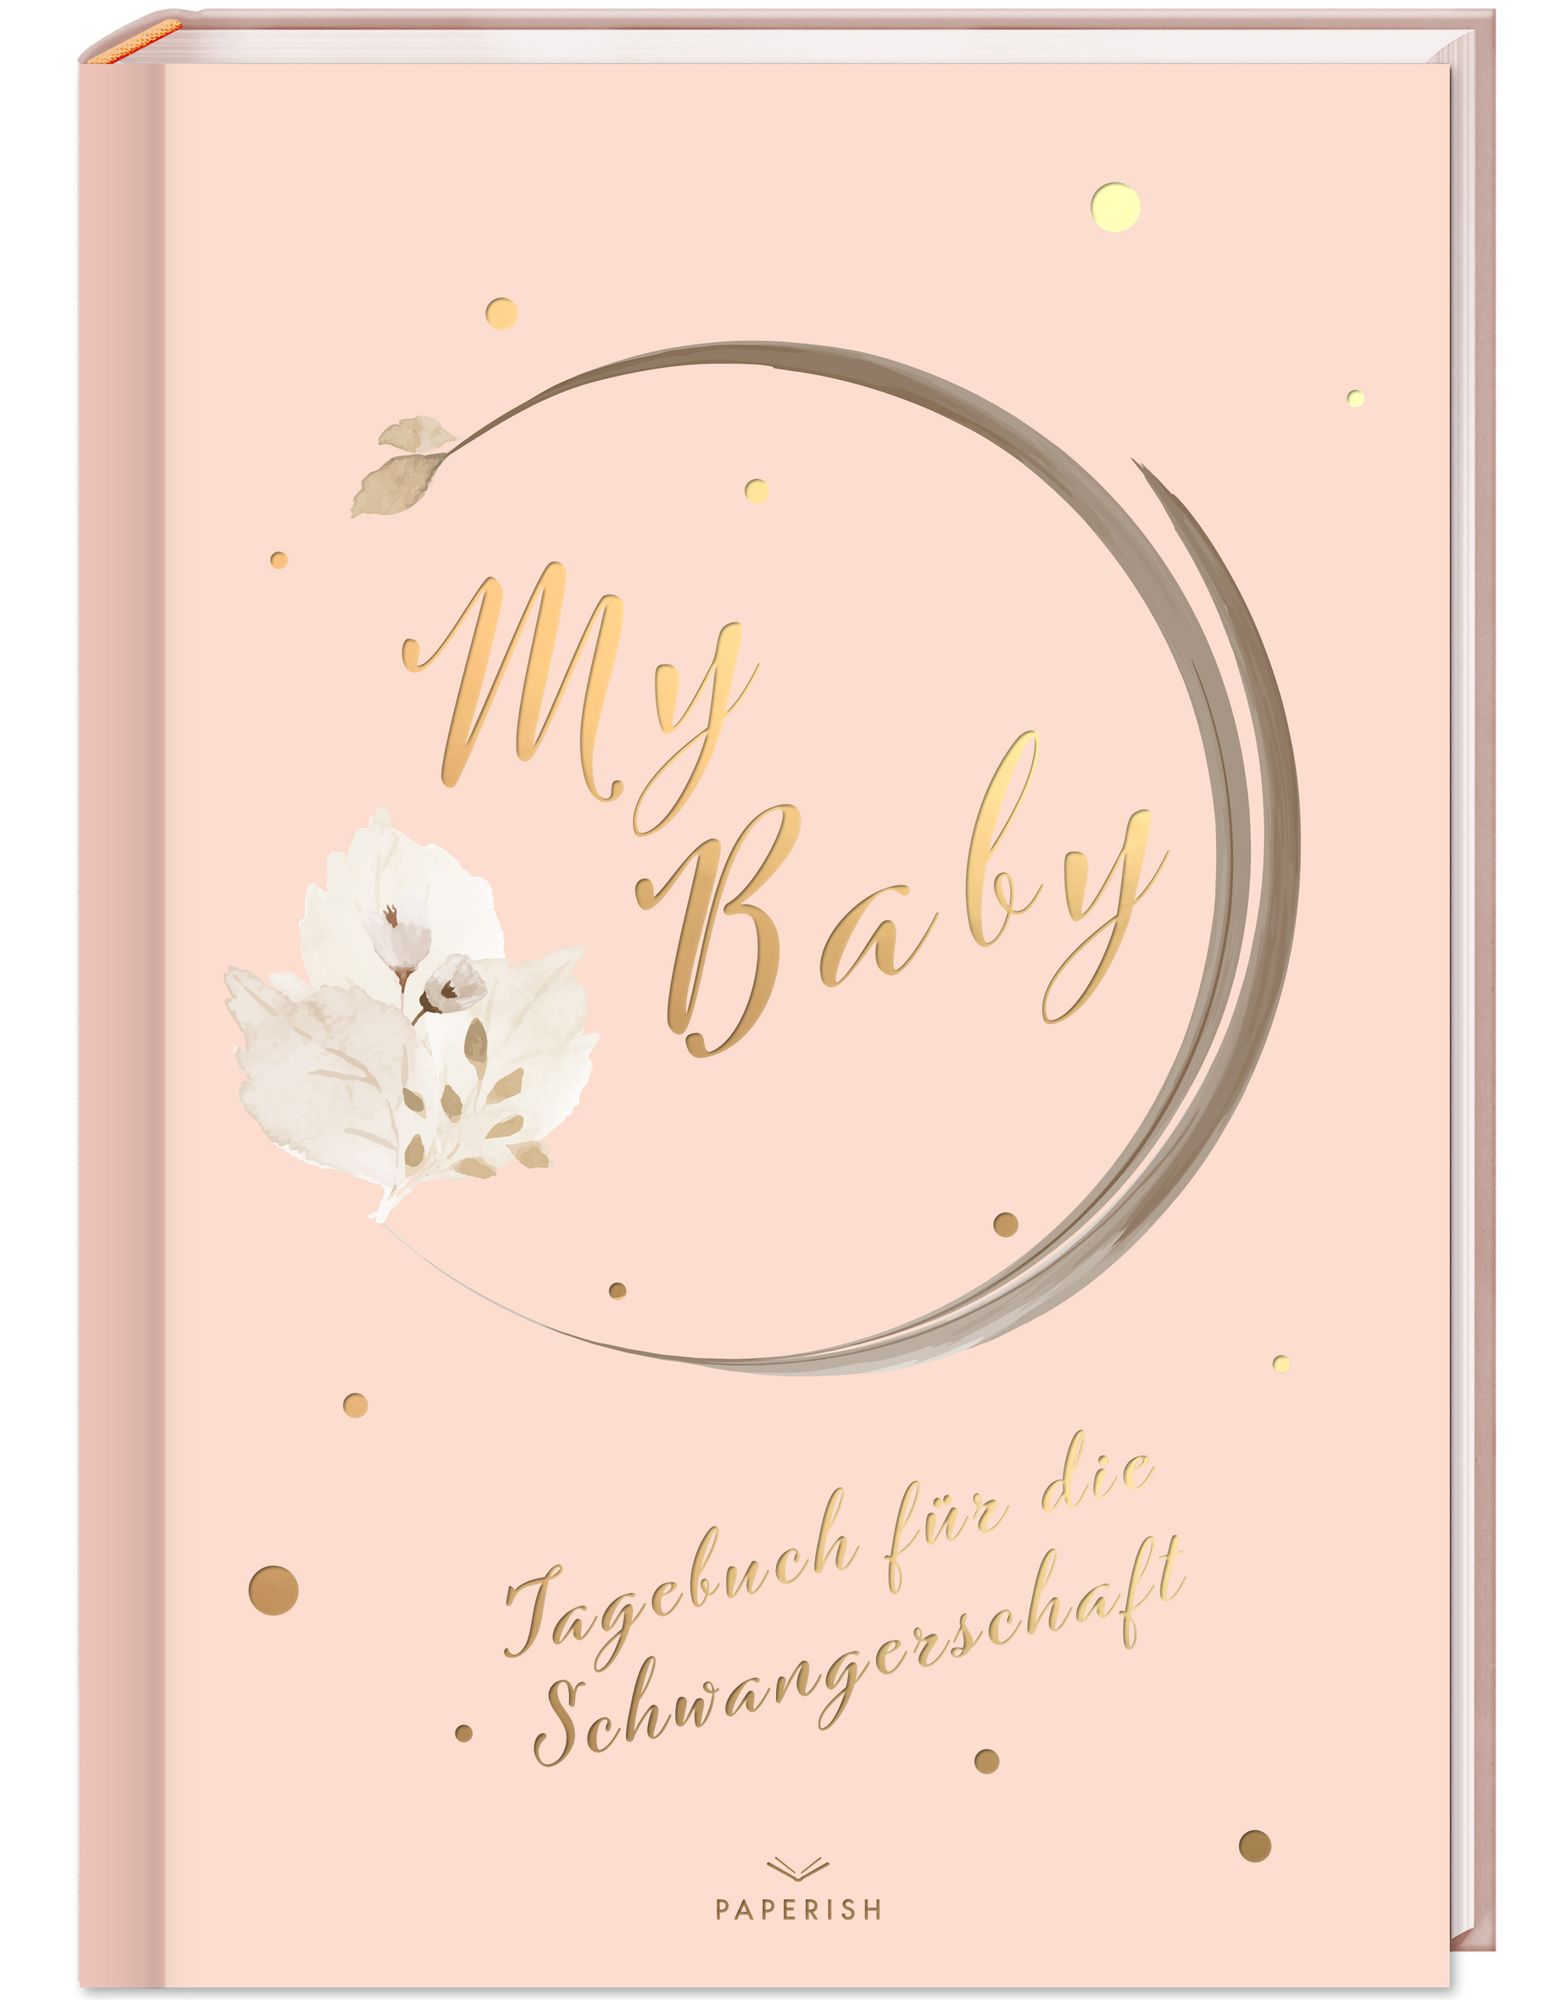 Buch - Loewe\' Tagebuch Schwangerschaft\' - My - Baby für \'Pia von die \'978-3-96895-013-6\'